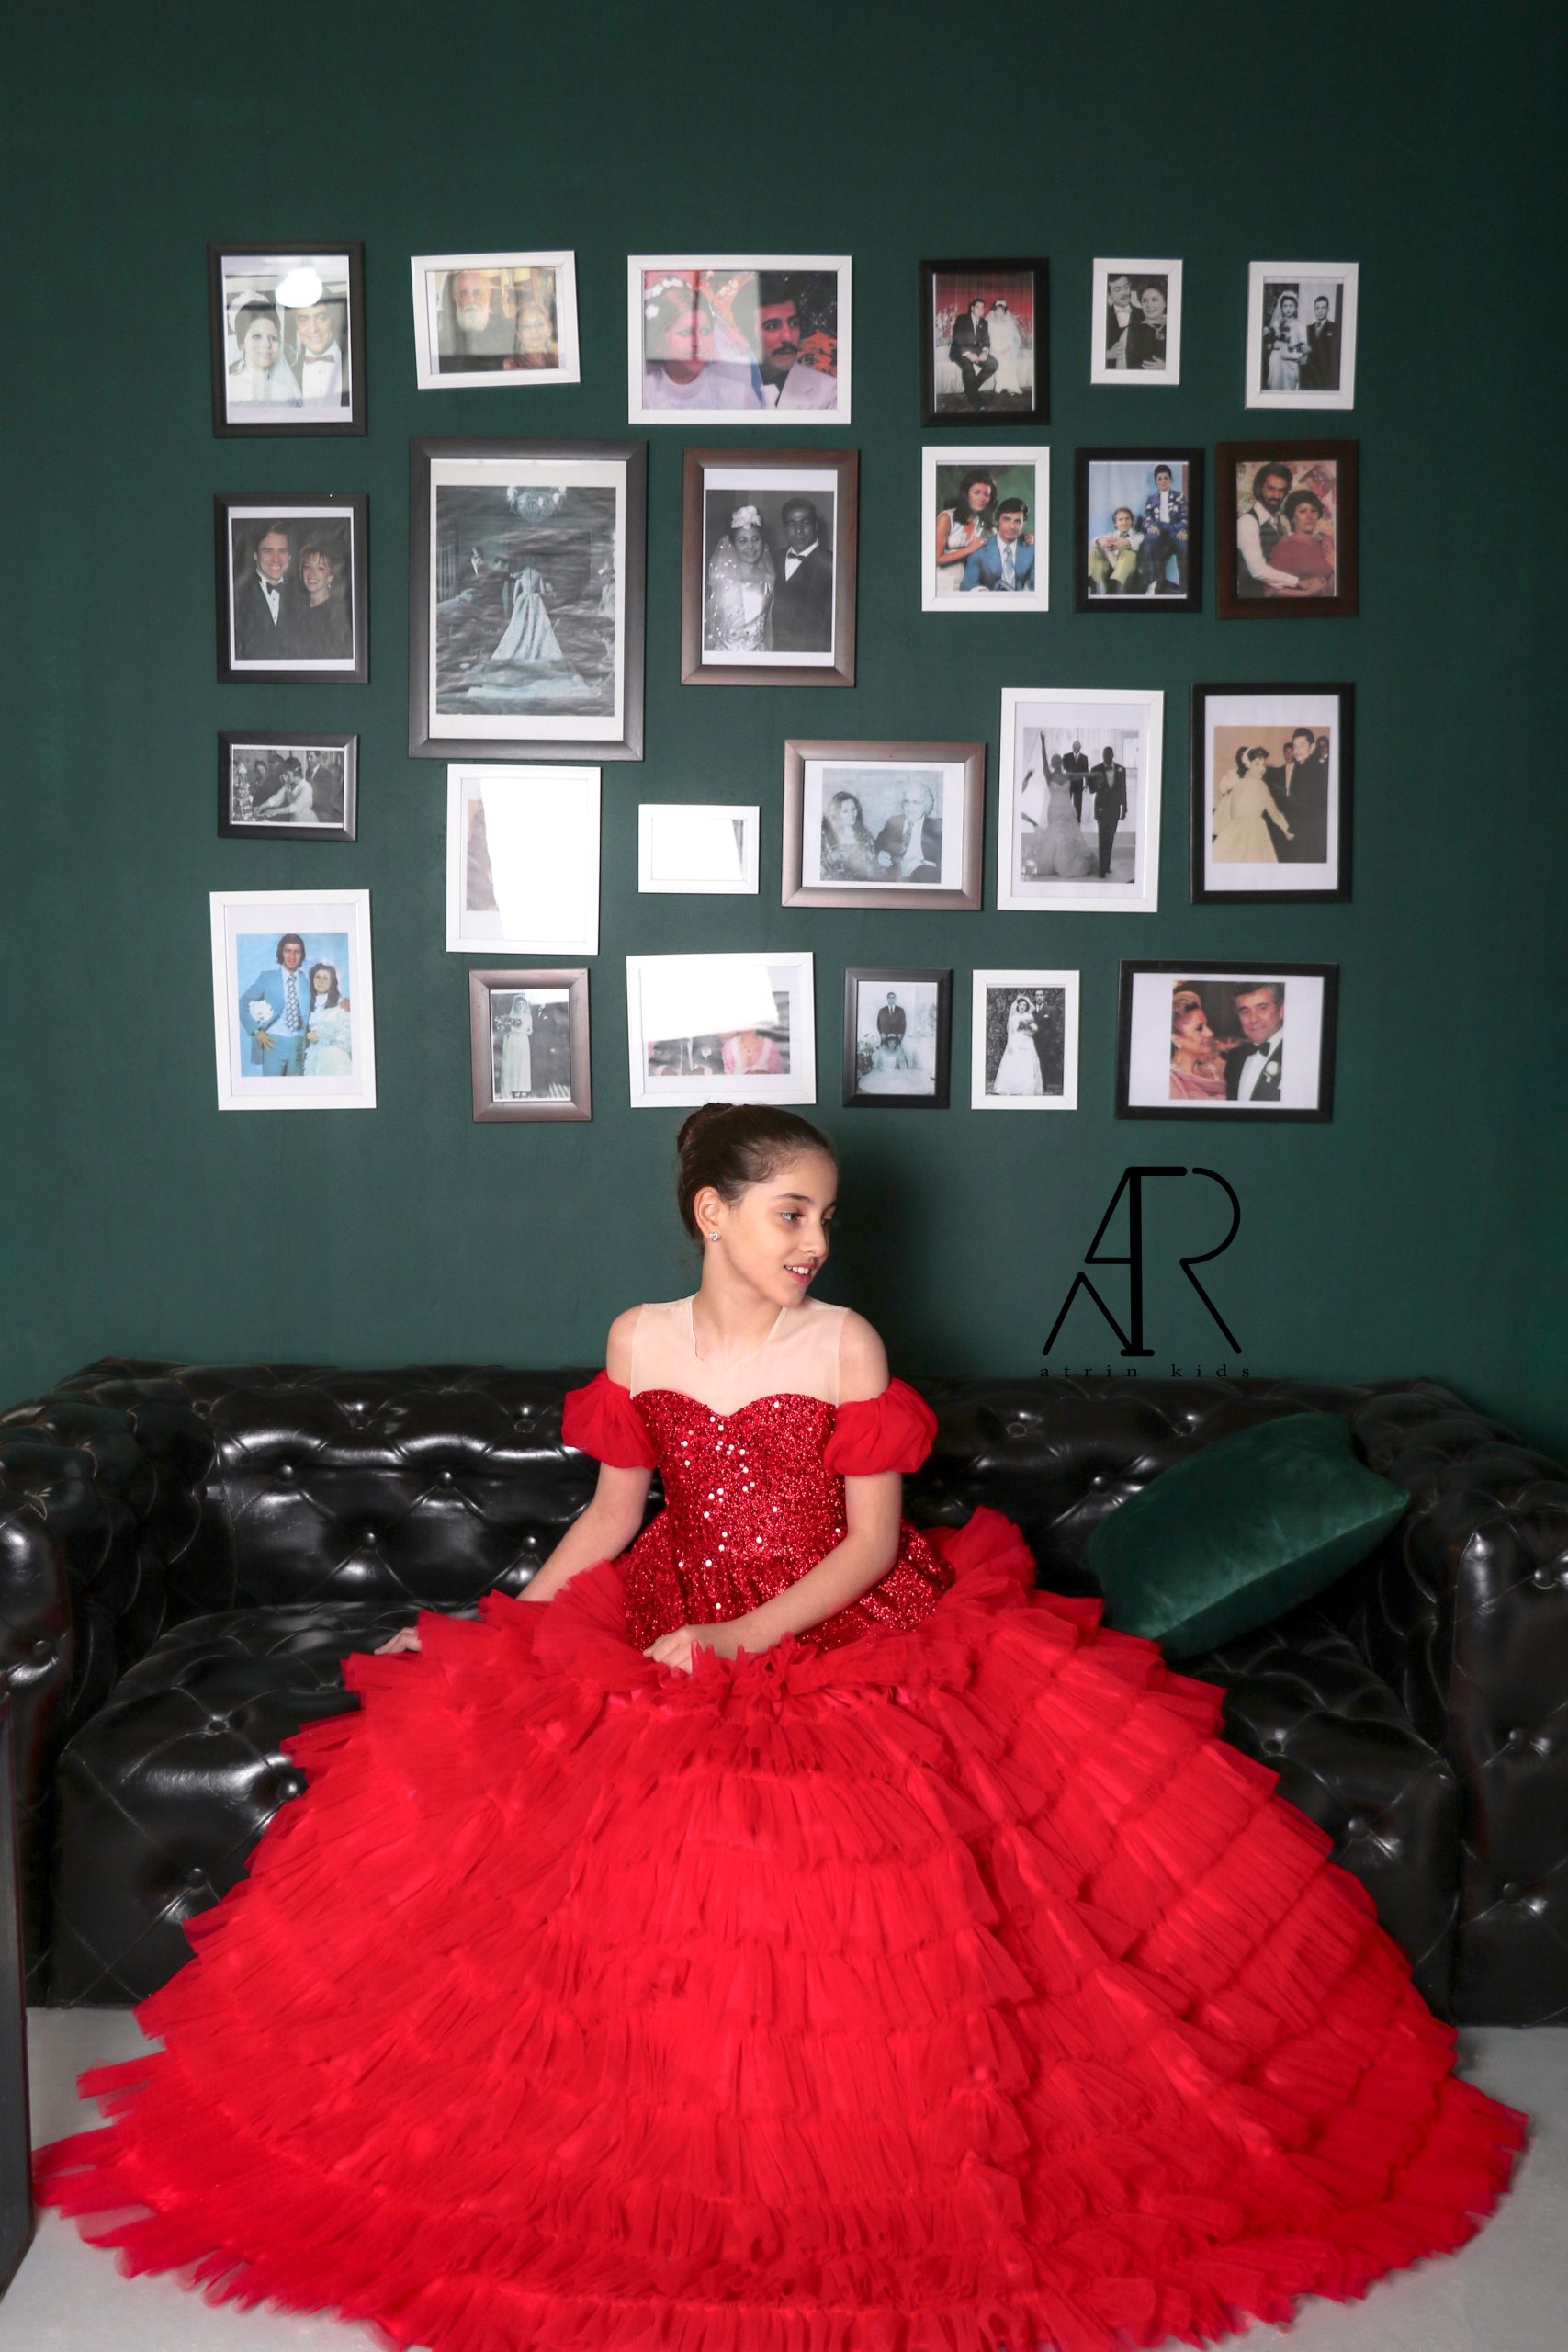 لباس مجلسی دخترانه و بچه گانه پرنسسی بلند و شیک قرمز مدل یلدا - آترین کیدز